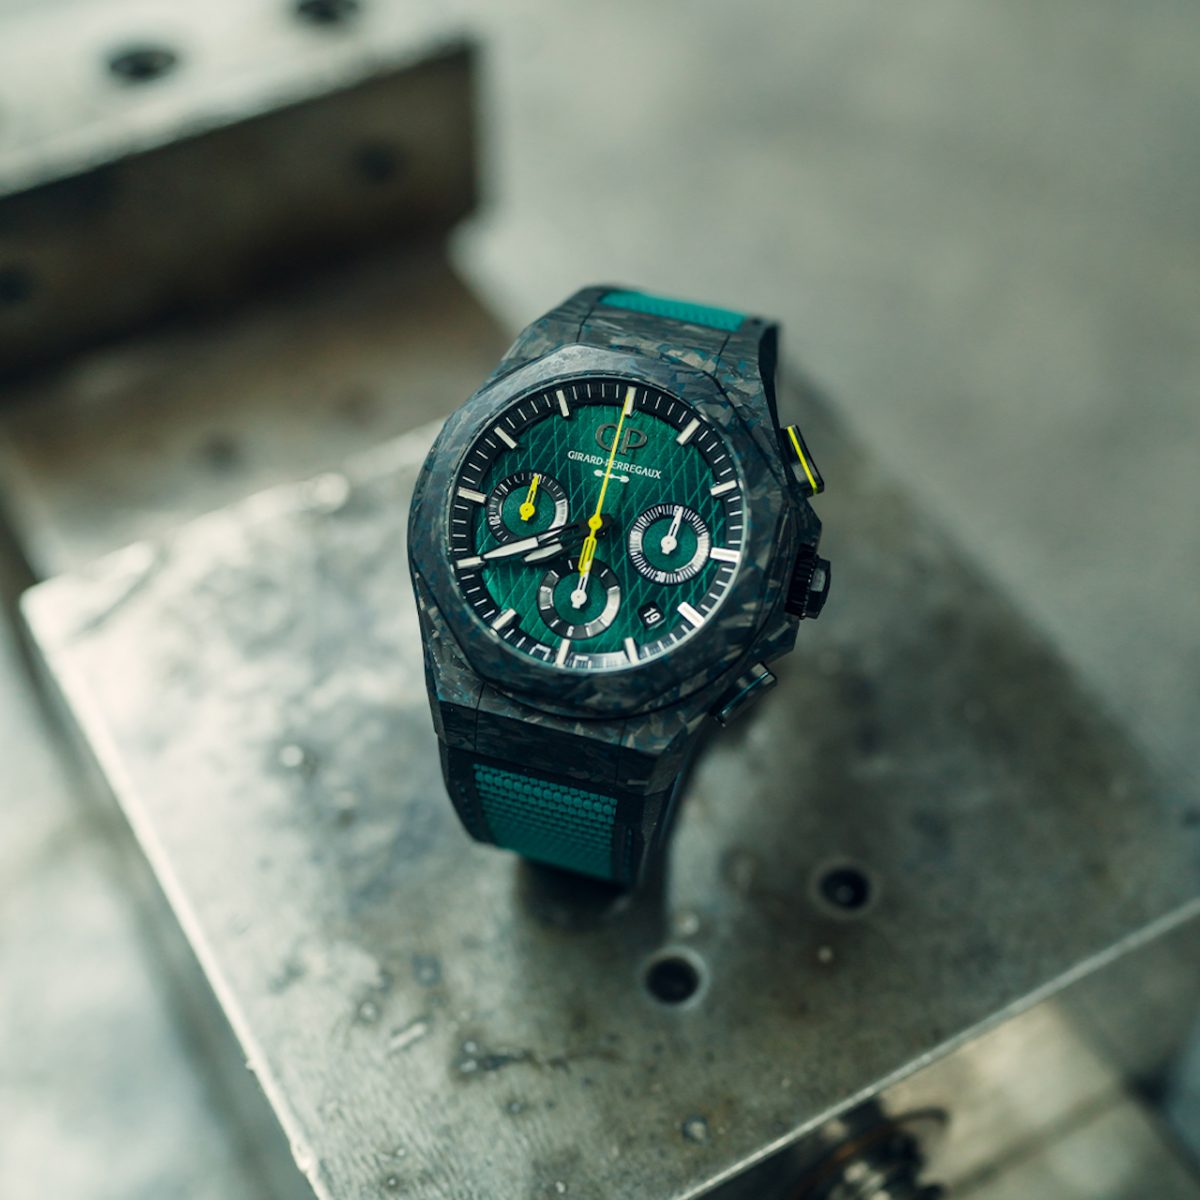 Nieuw Girard-Perregaux Aston Martin horloge is gelimiteerd en van titanium